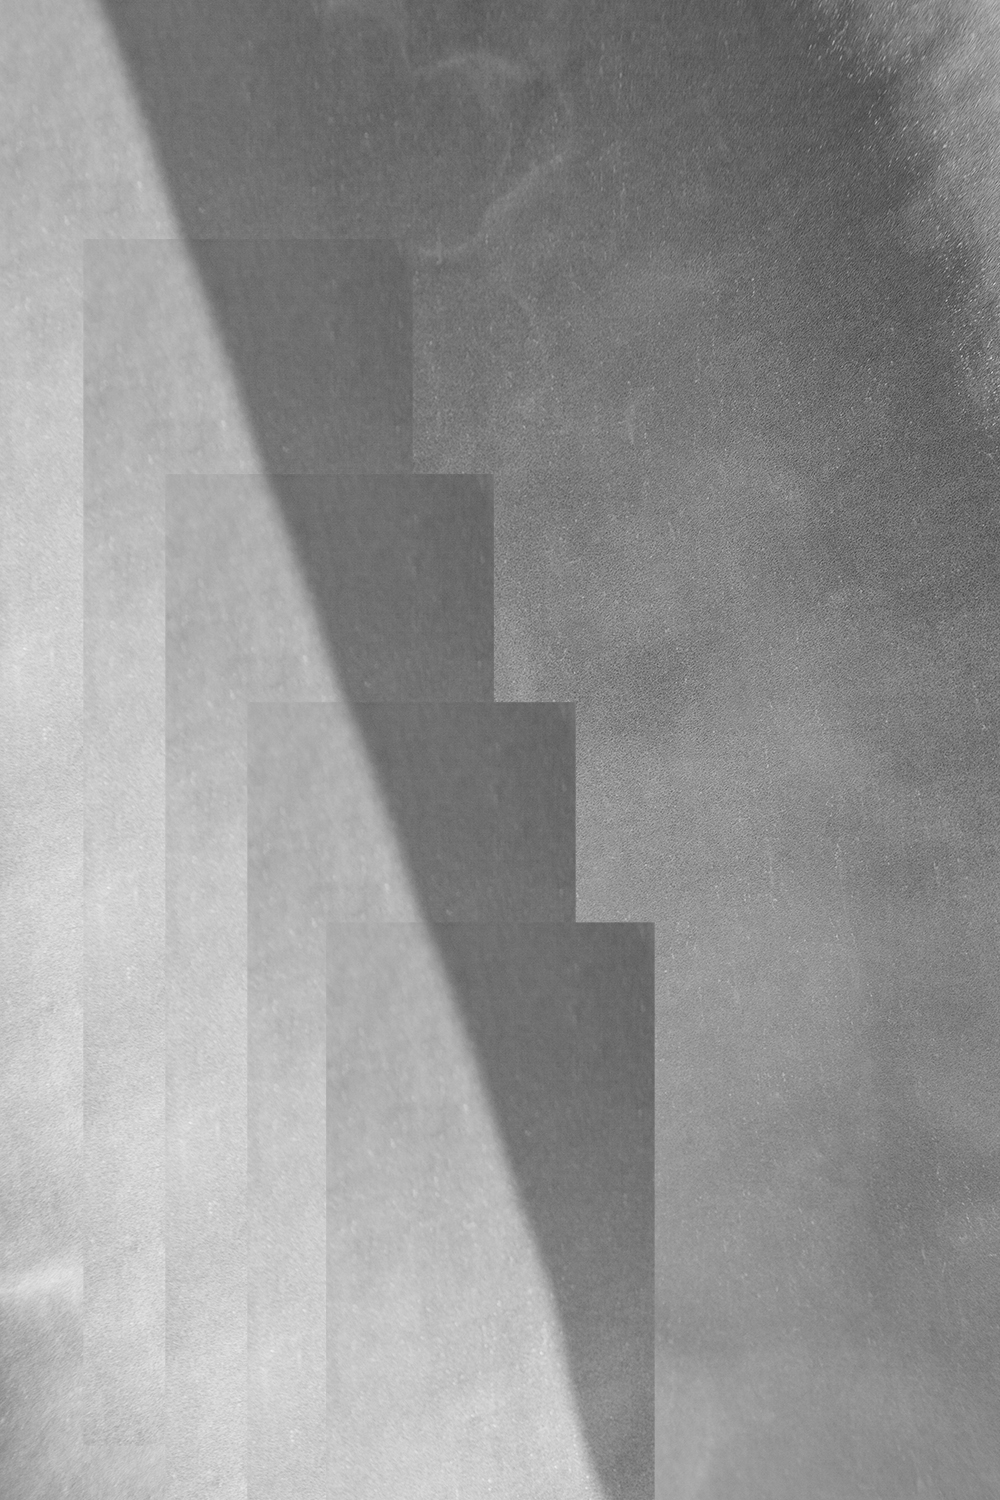 carina martins, eikasia - fotografia cinza com formas geometricas com rectangulos-1